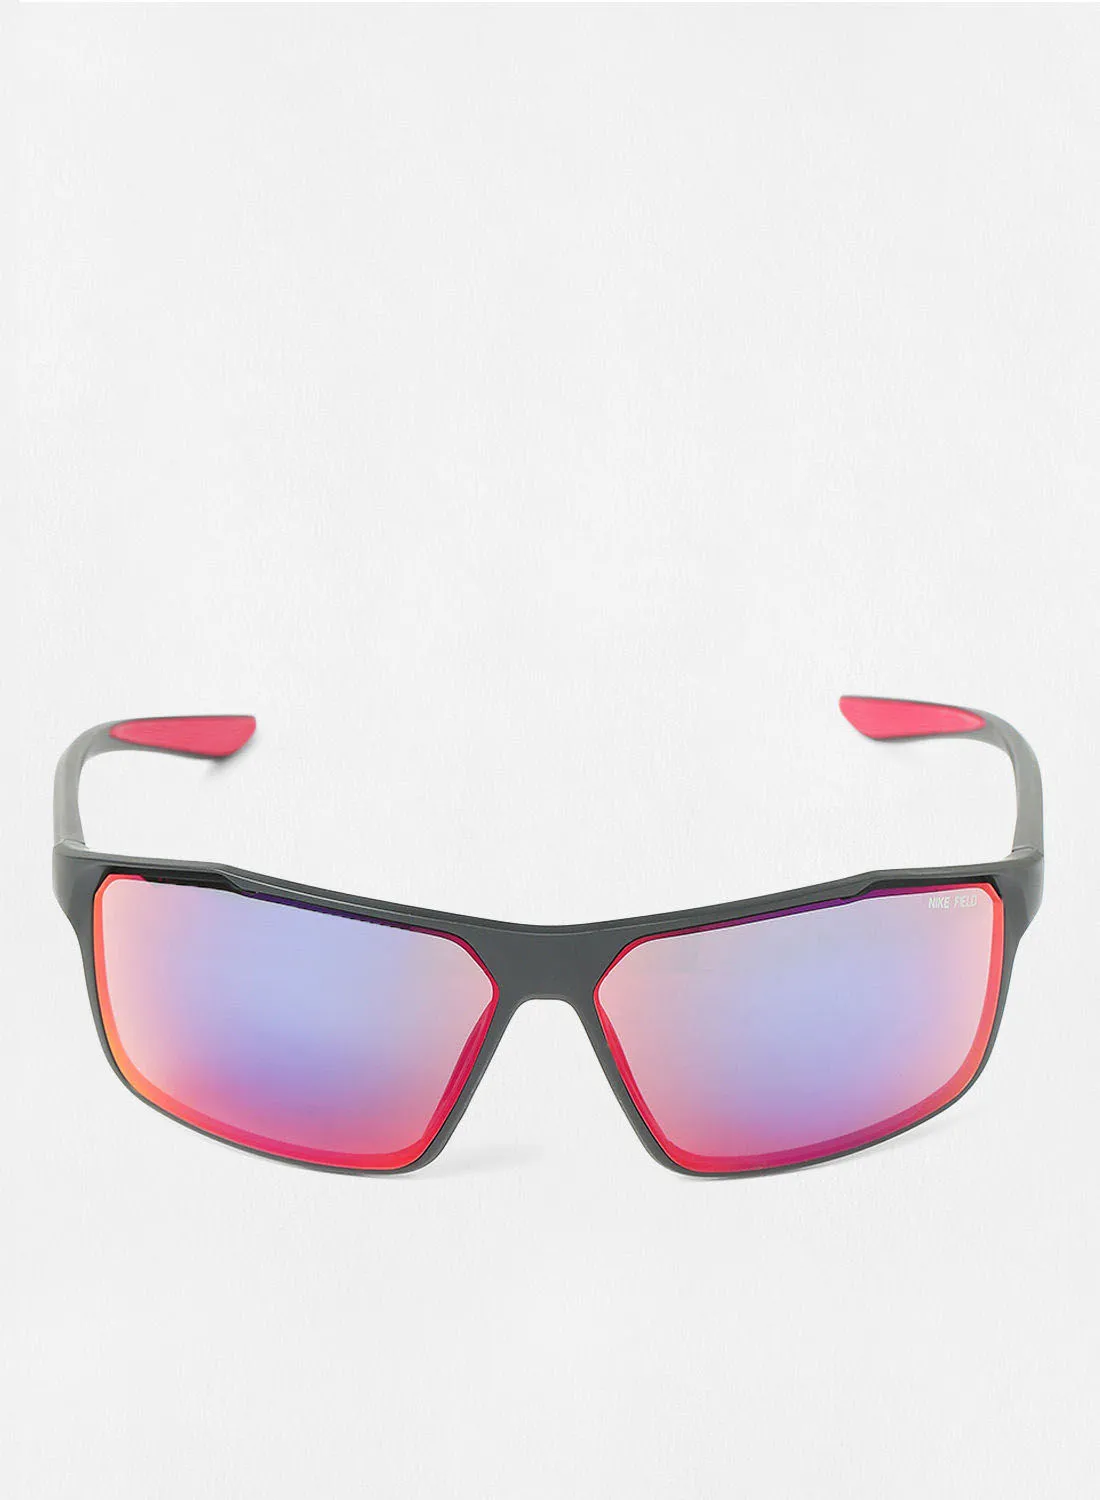 Nike Men's UV Protection Rectangular Sunglasses